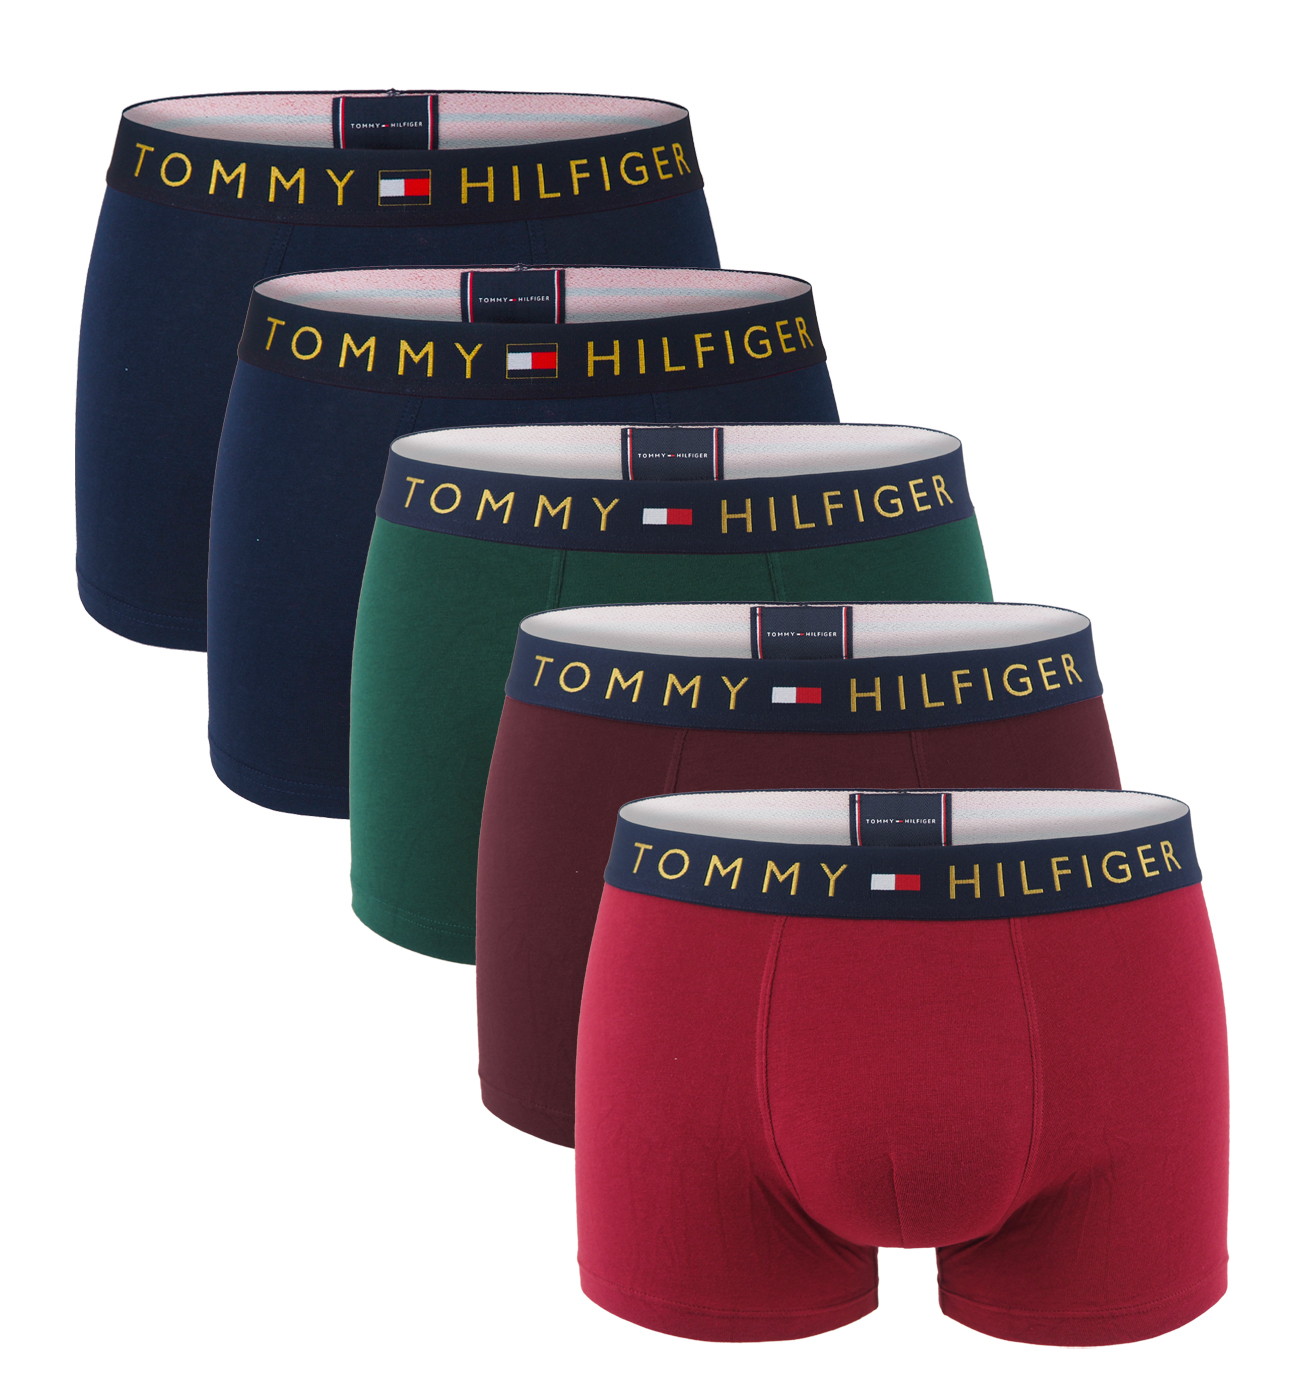 TOMMY HILFIGER - boxerky 5PACK premium cotton essentials gold logo multicolor combo - limitovaná edícia